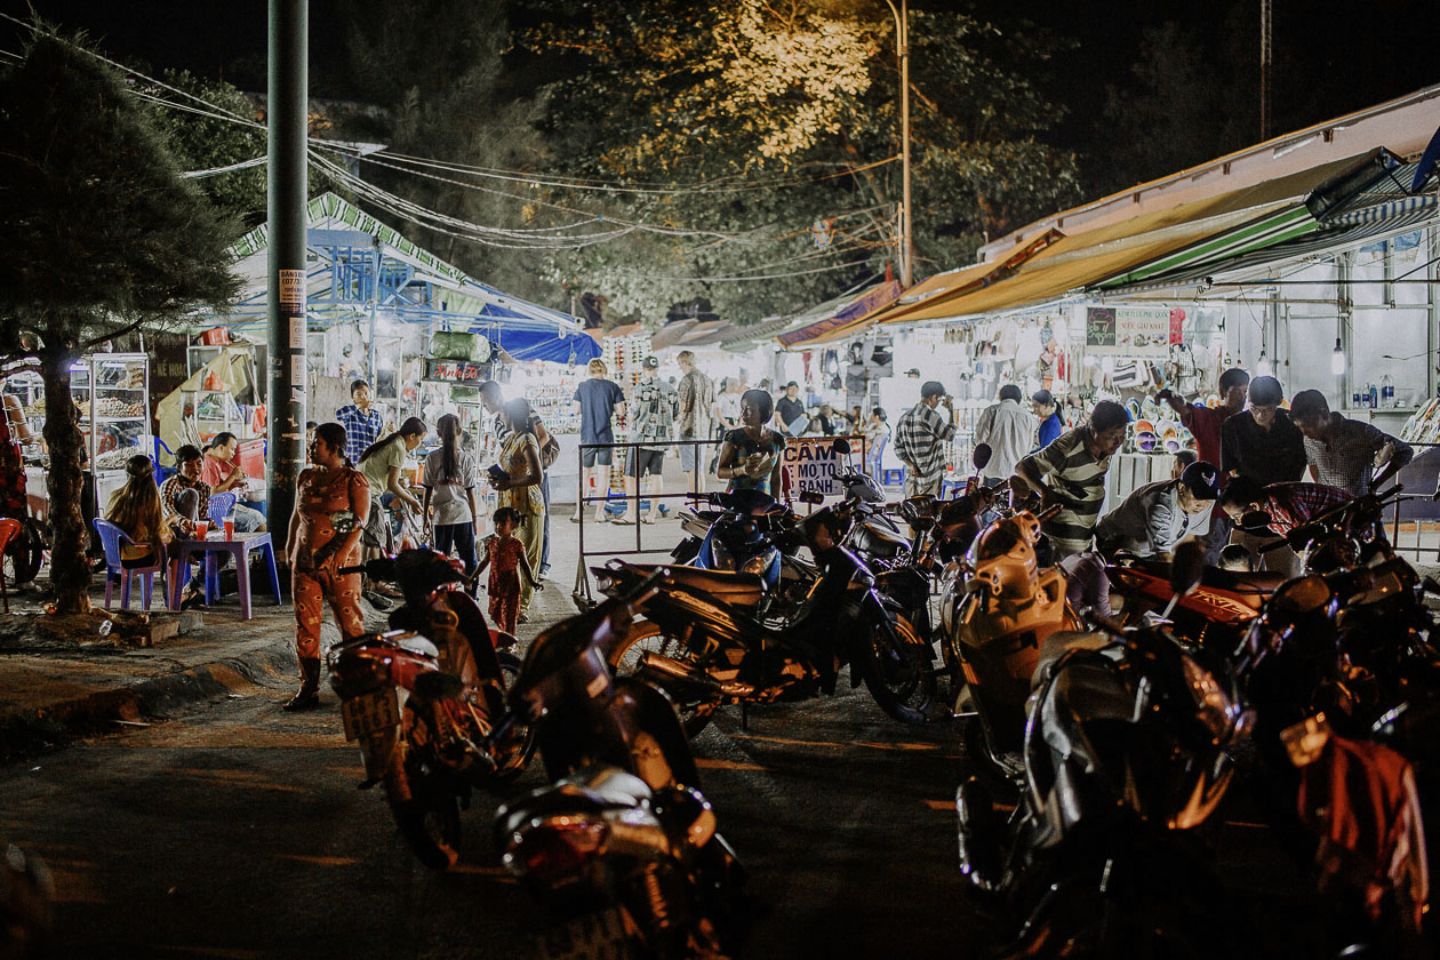 Chợ đêm Phú Quốc (chợ đêm Bạch Đằng) – Thế giới ẩm thực nhộn nhịp khi đêm về 4